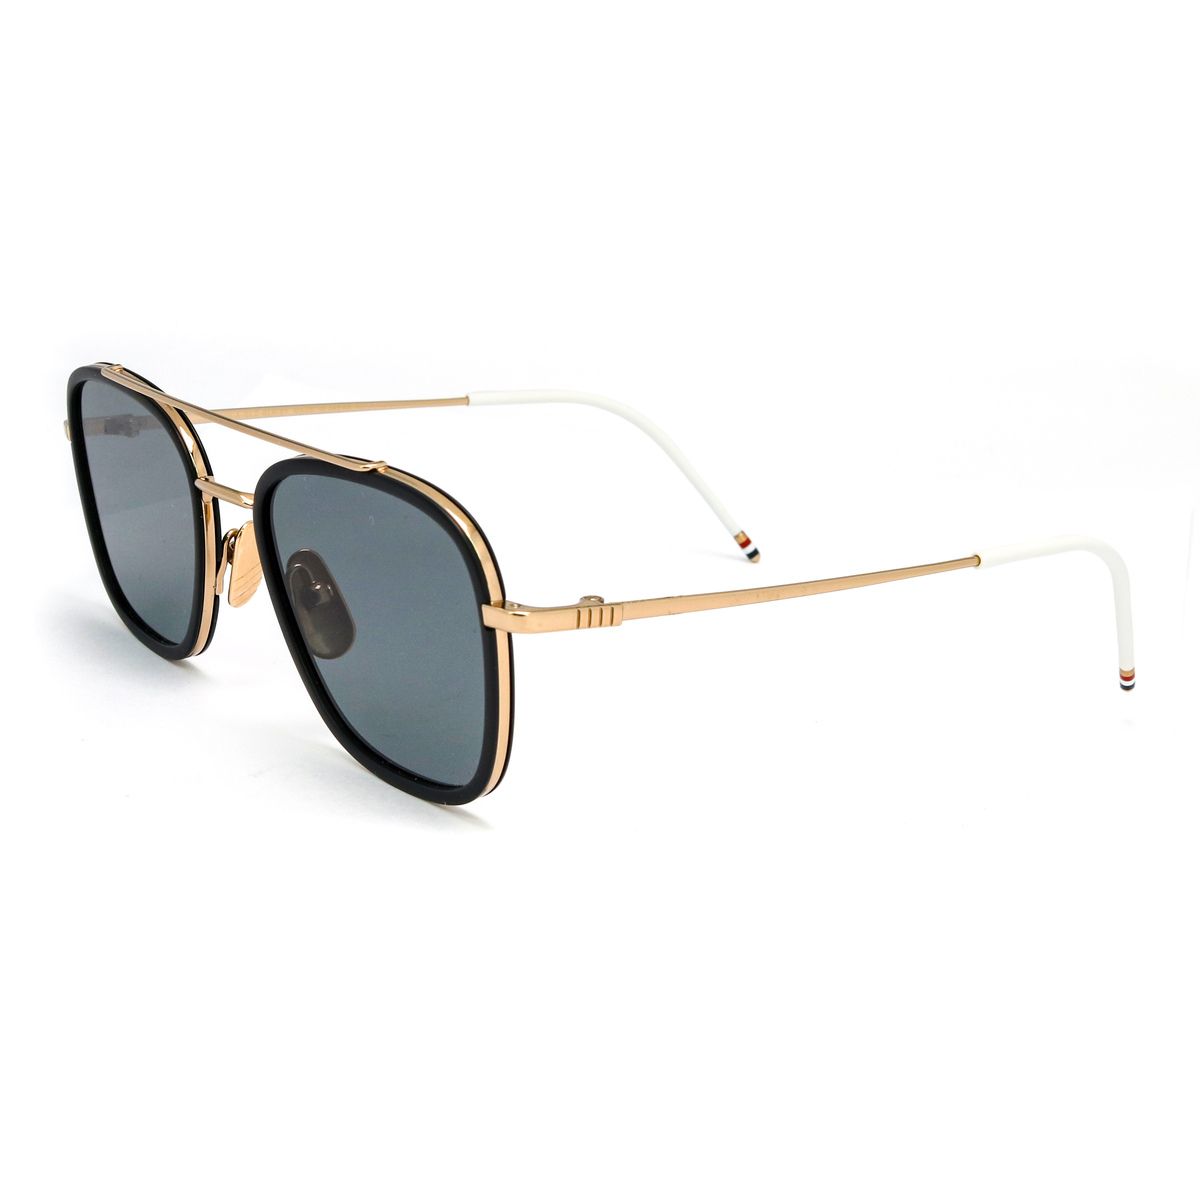 800 Square Sunglasses A - size 51